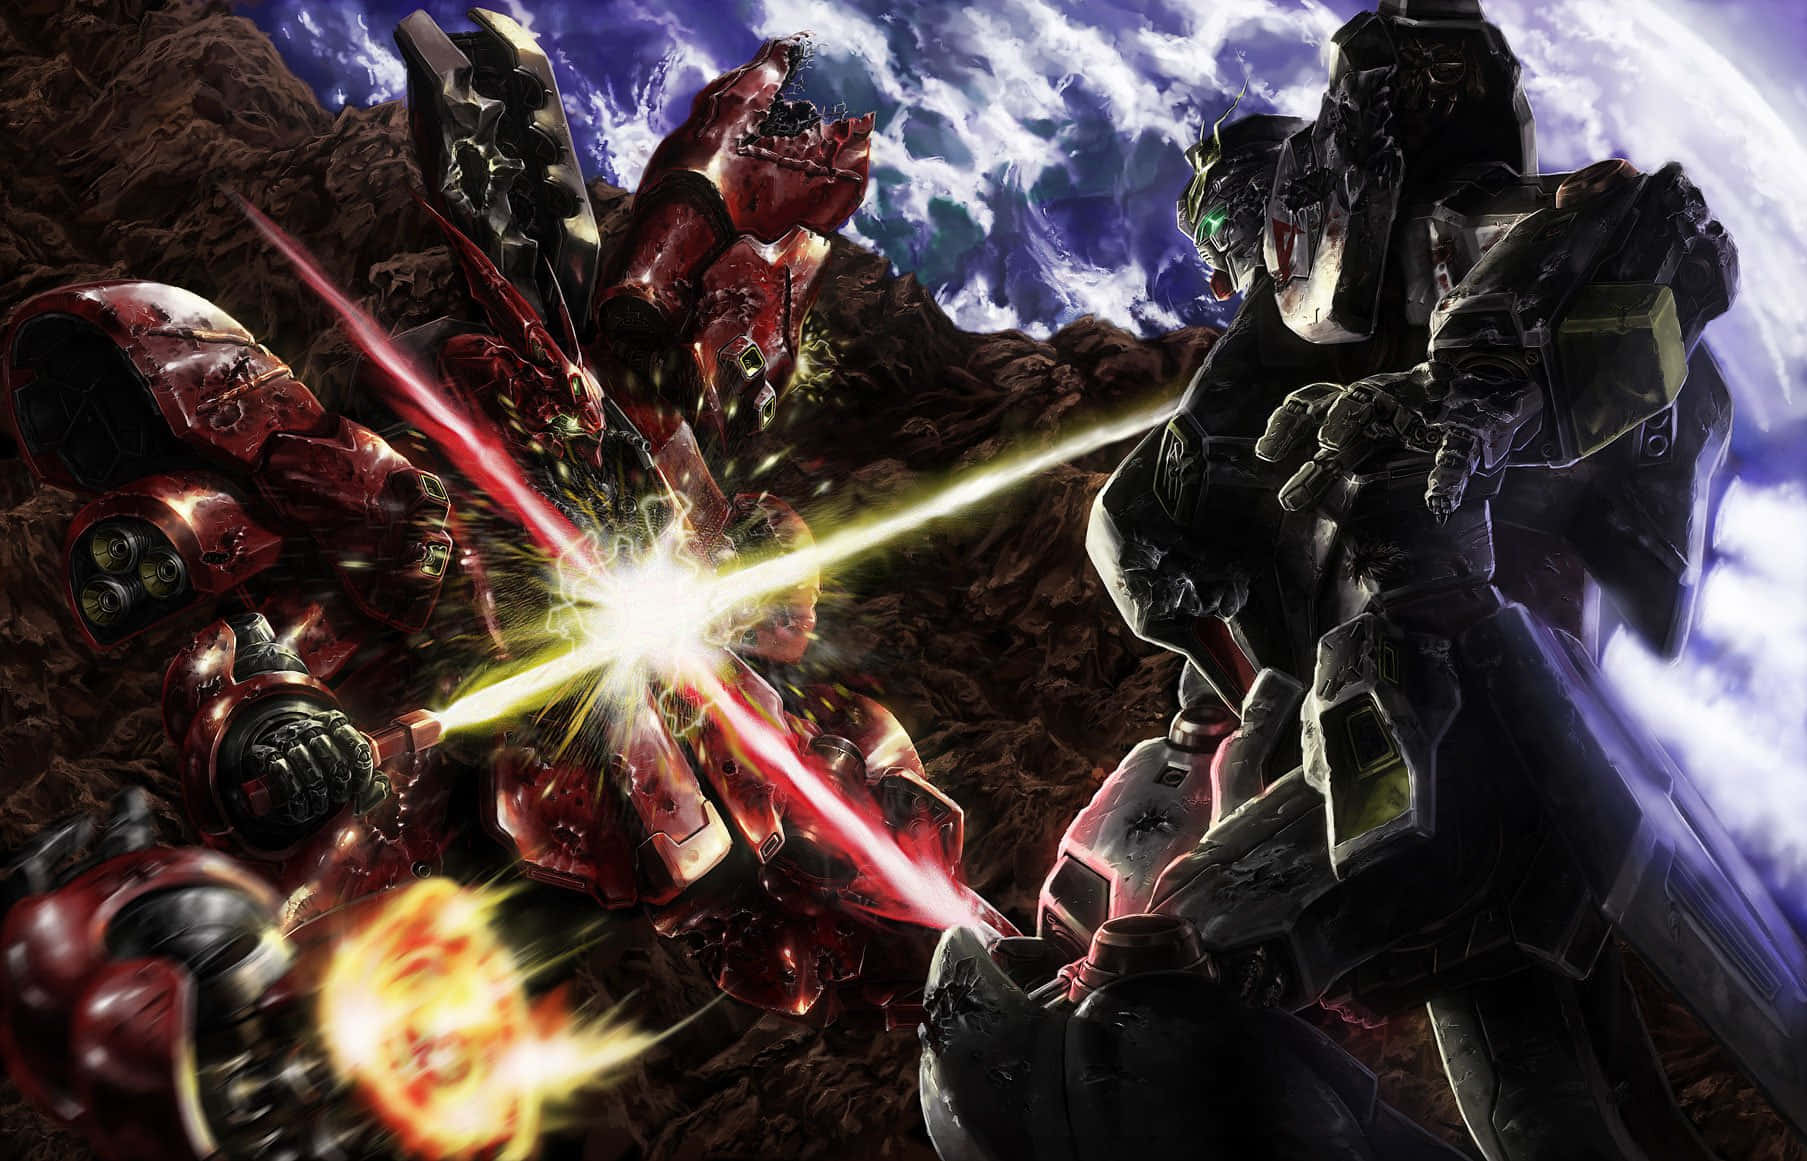 Vivaas Épicas Batalhas De Mecha De Ficção Científica De Gundam Com Este Incrível Papel De Parede Do Clássico Mecha Rx-78-2 Gundam.